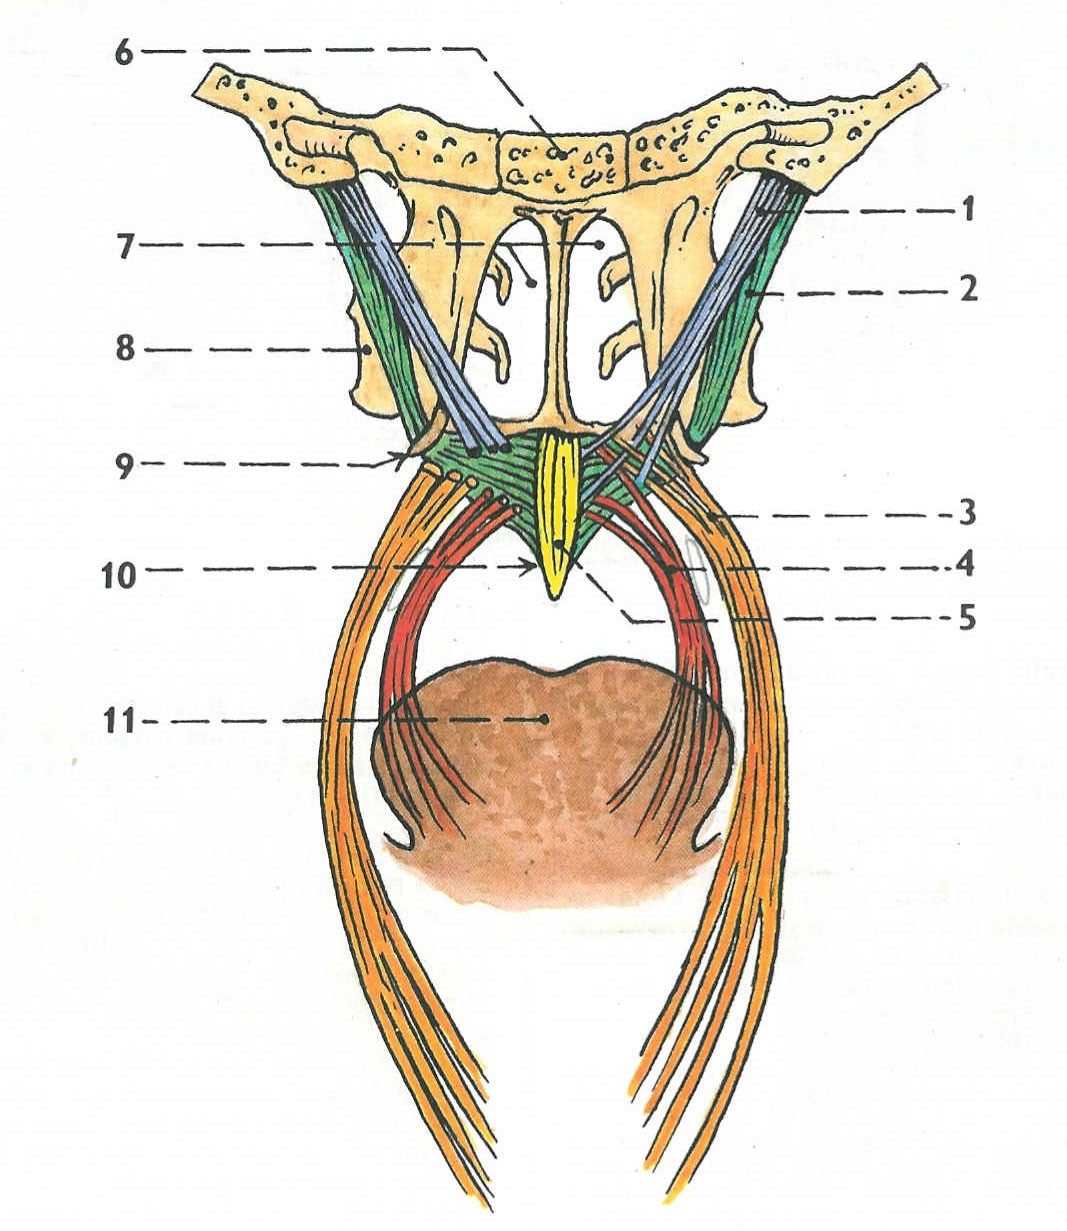 Při poškození r. internus vznikne obrna svalů měkkého patra (obr.4), které společně inervuje n. vagus a n. glossopharyngeus.